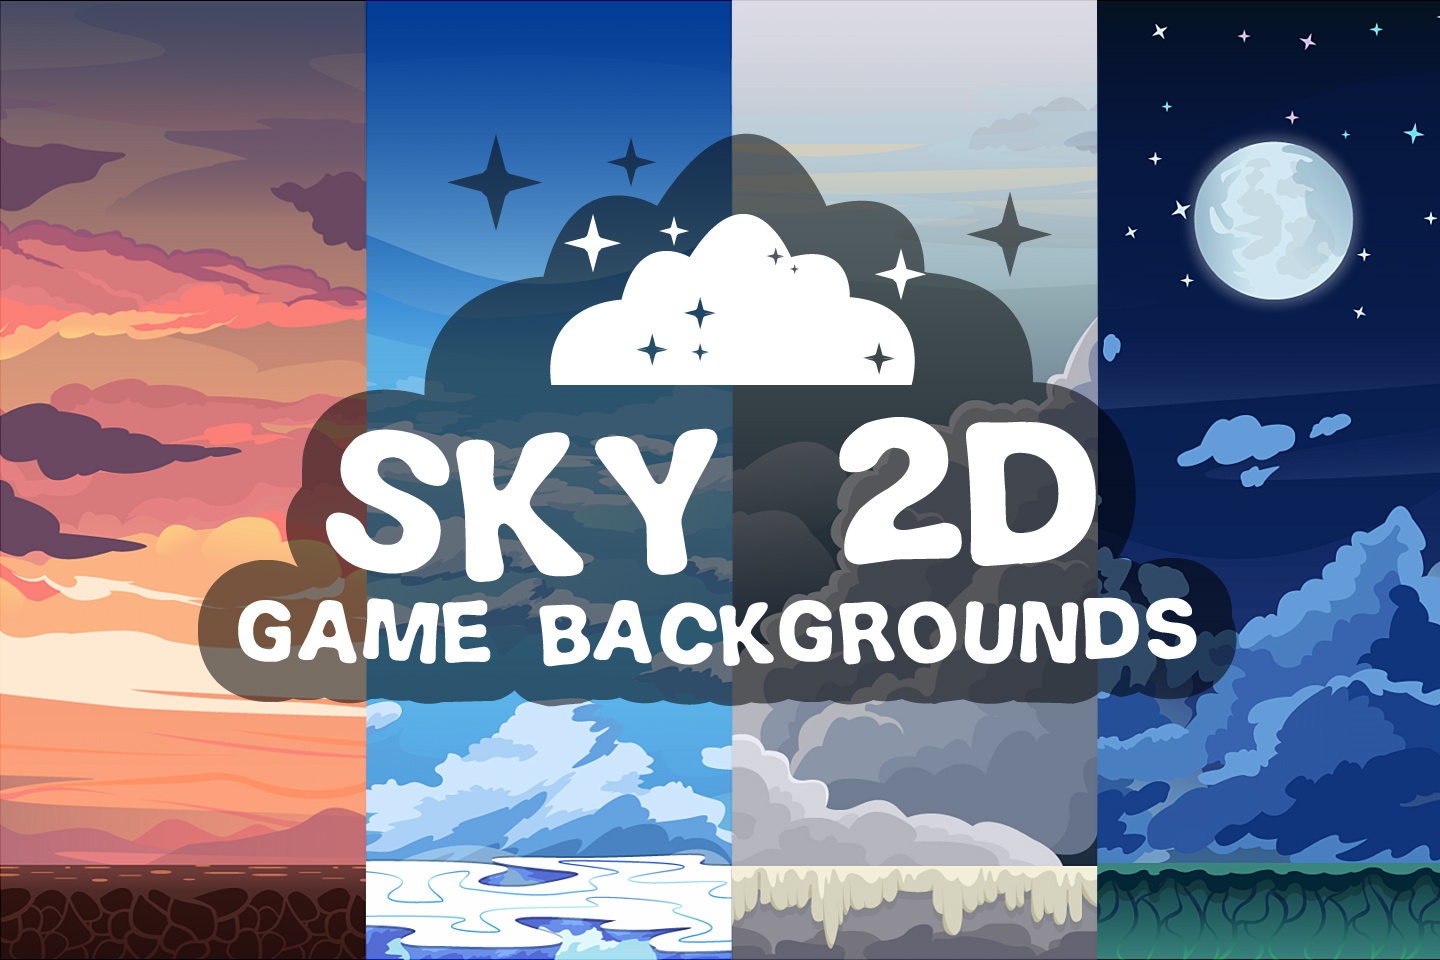 Sky 2D Game Backgrounds sẽ mang đến cho bạn những hình ảnh tuyệt đẹp về bầu trời xanh ngắt, mây trắng đan xen và những hạt sao lấp lánh giữa đêm tối.